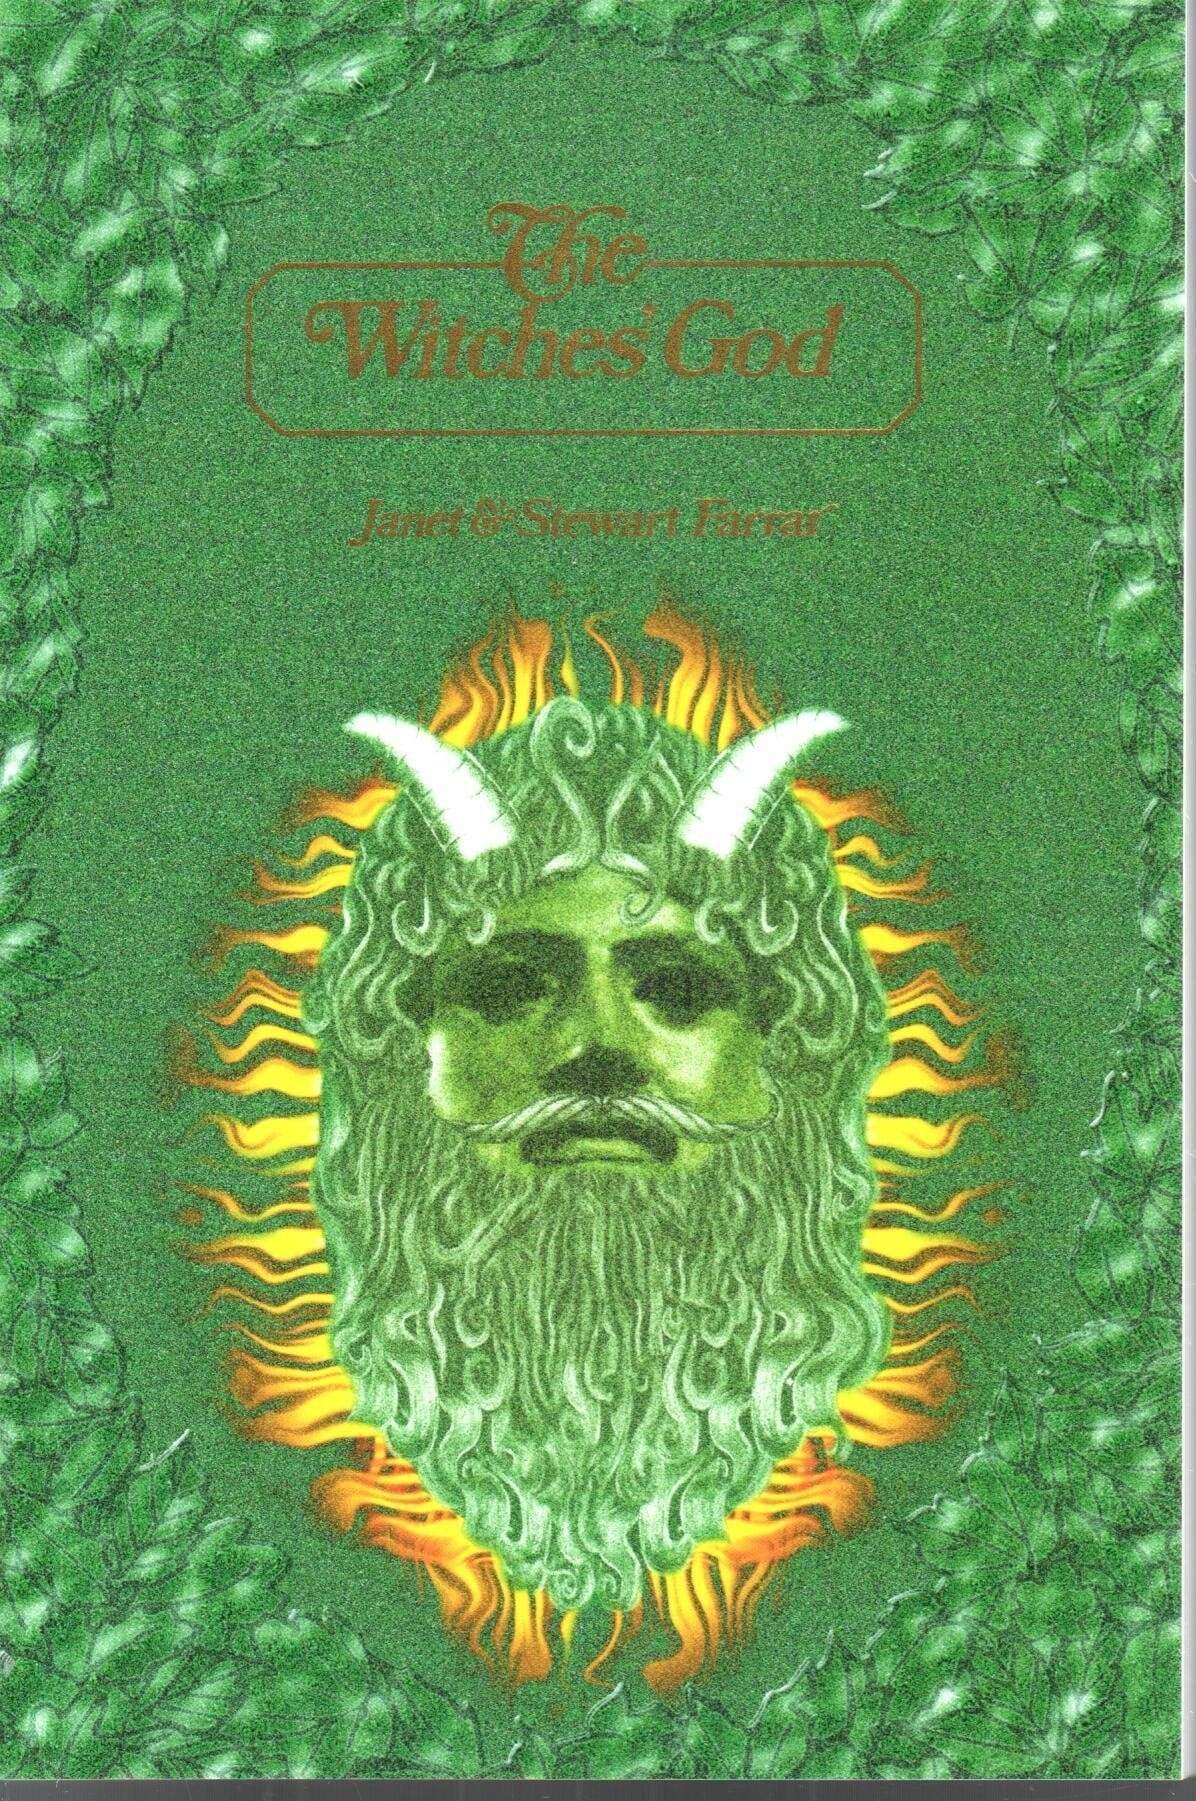 The Witches' God  by Farrar & Farrar